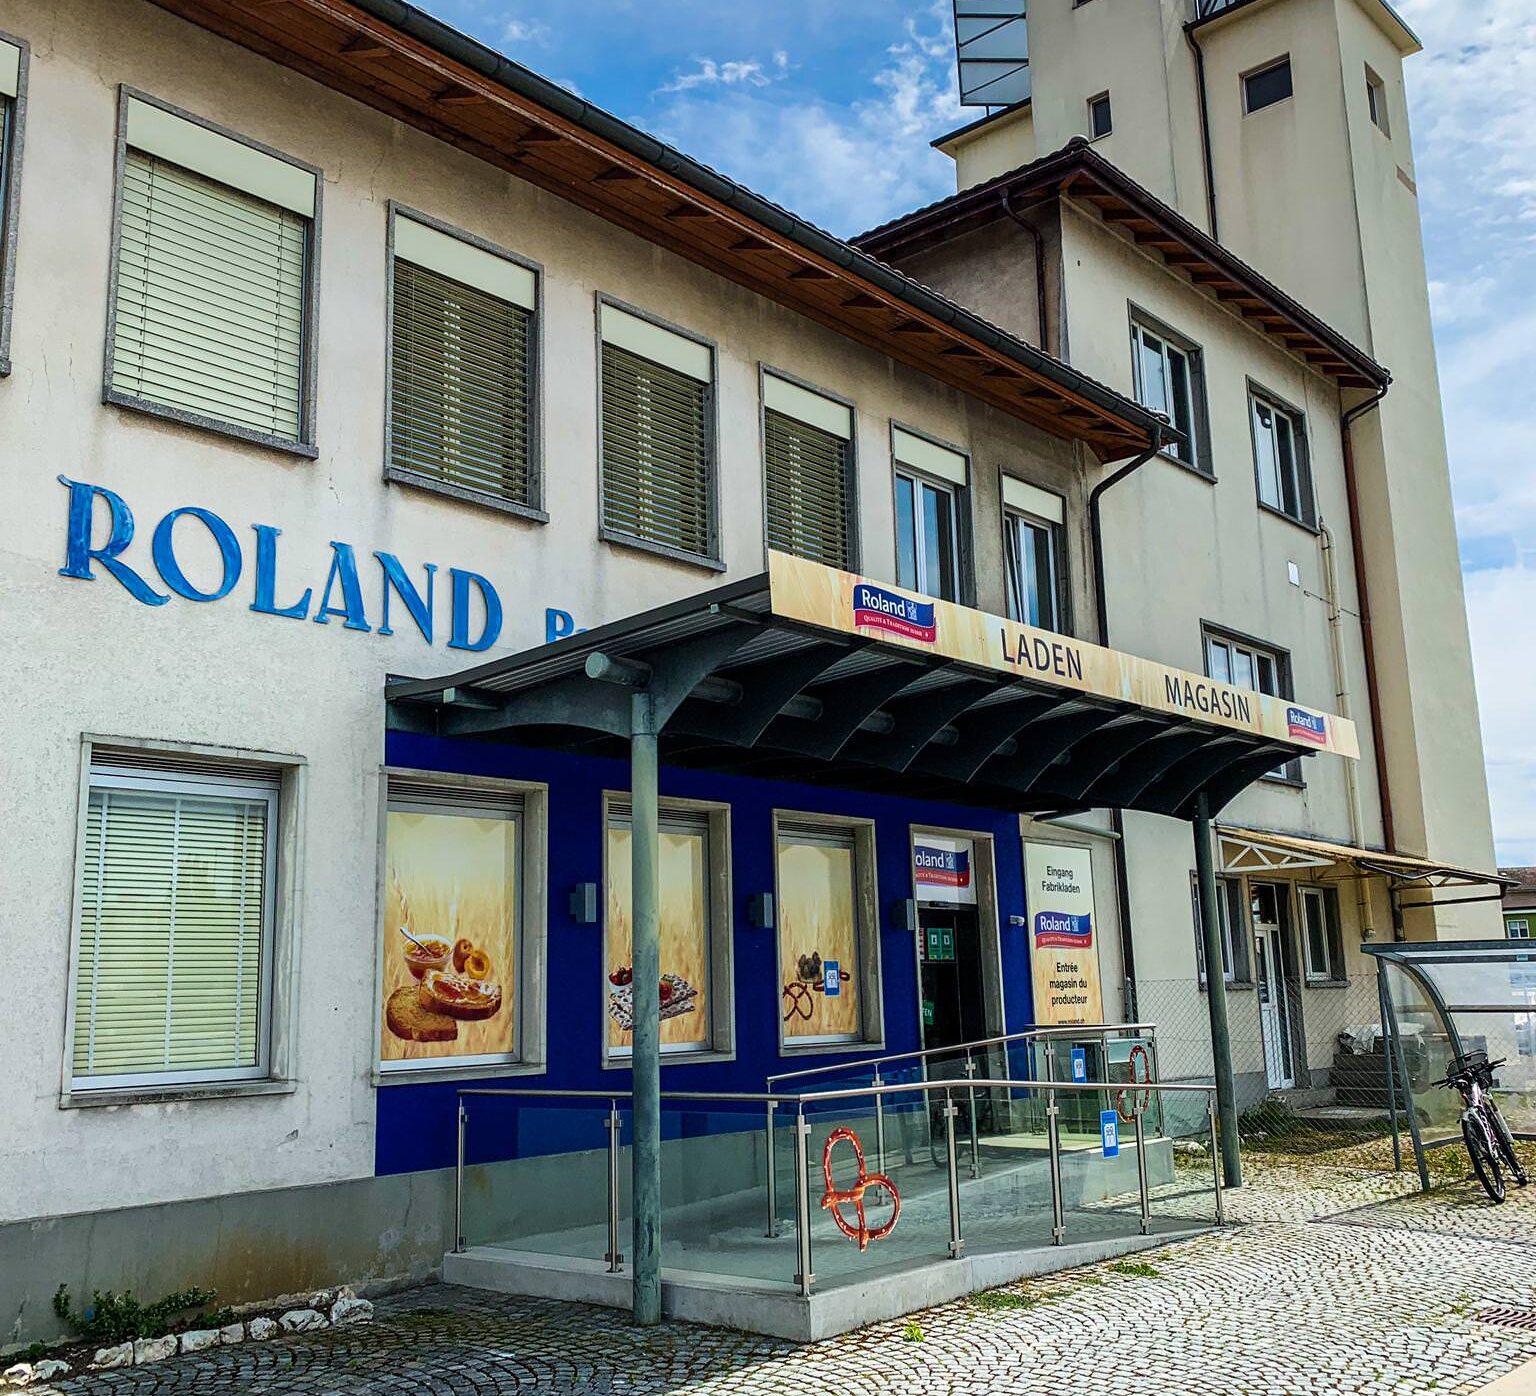 Roland-Fabrikladen-aspect-ratio-11-10